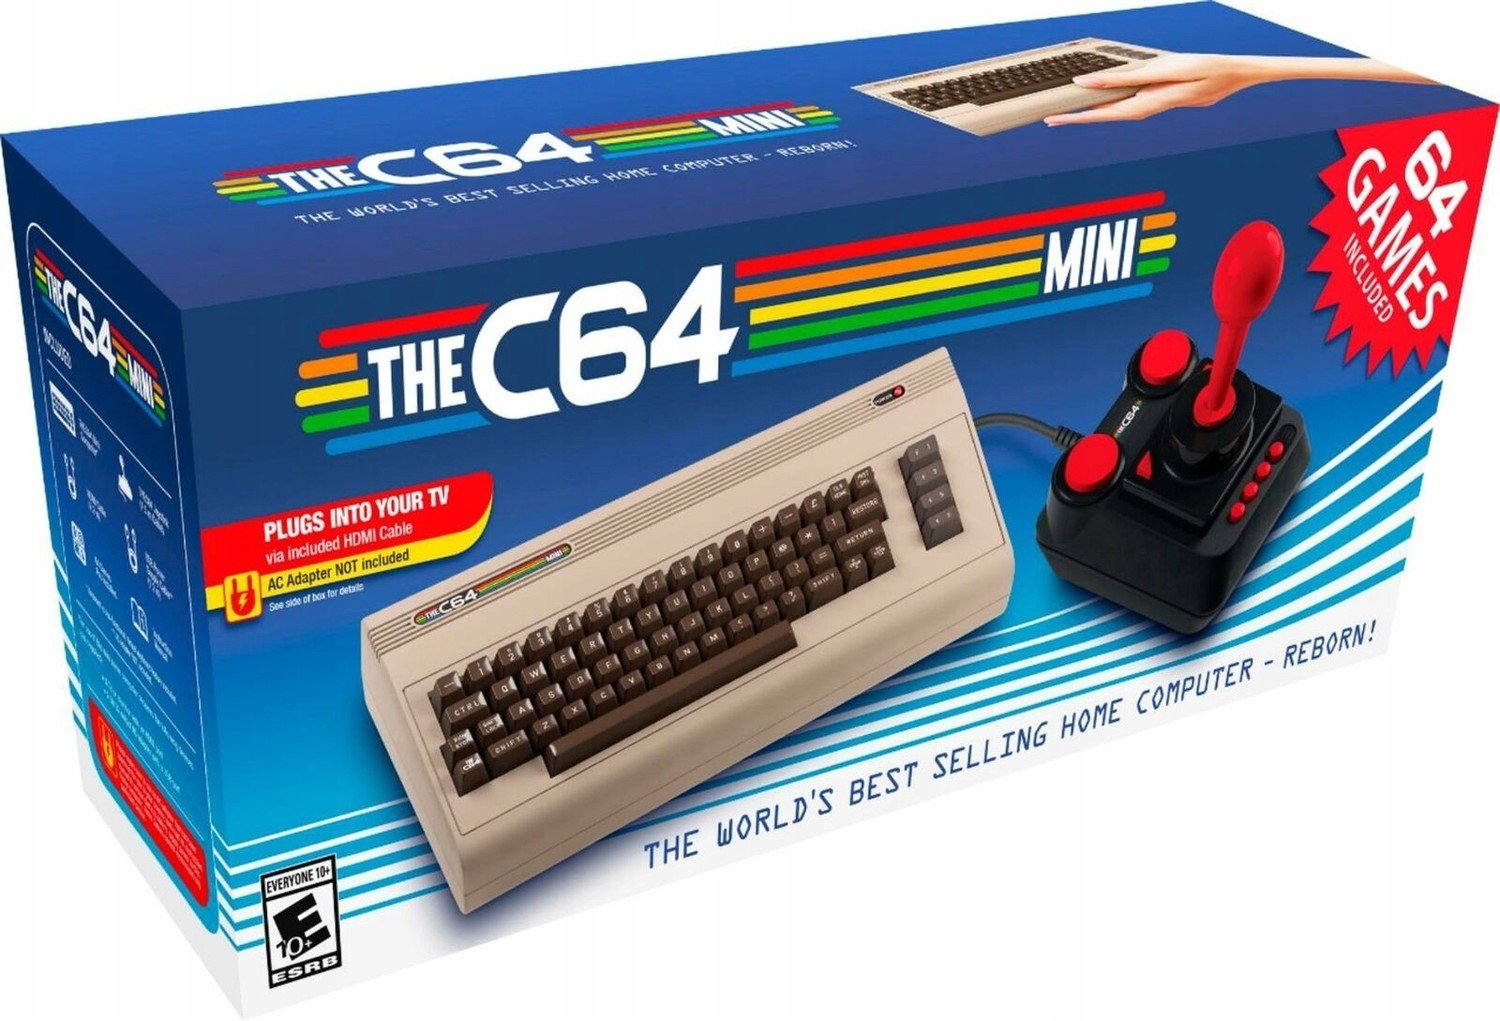 The C64 Mini Commodore Retro konzole